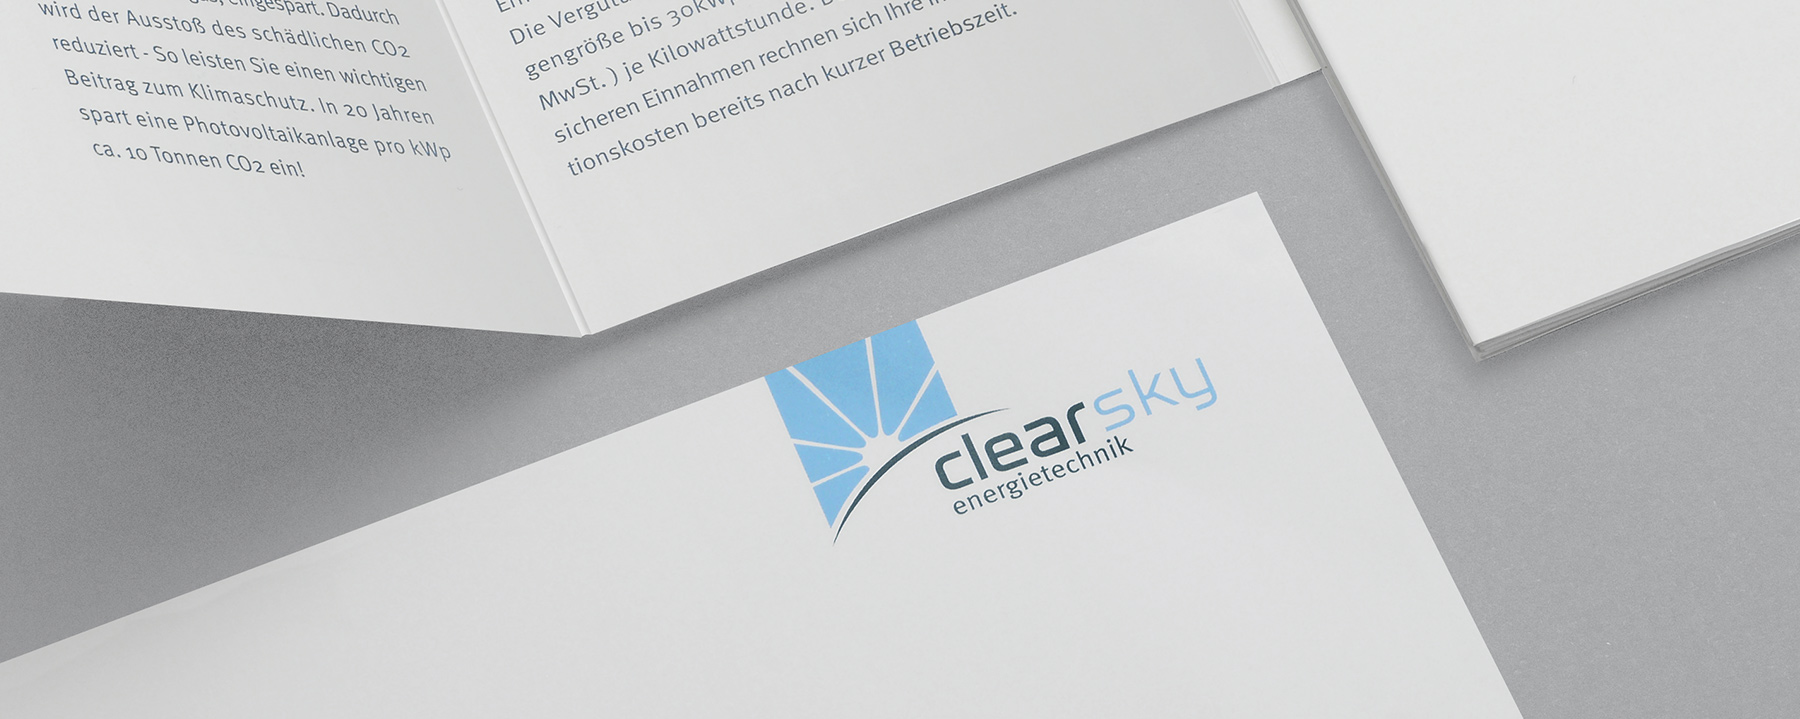 Geschäftsausstattung für Clearsky Energietechnik | Heidelberg | by Ilyas Susever